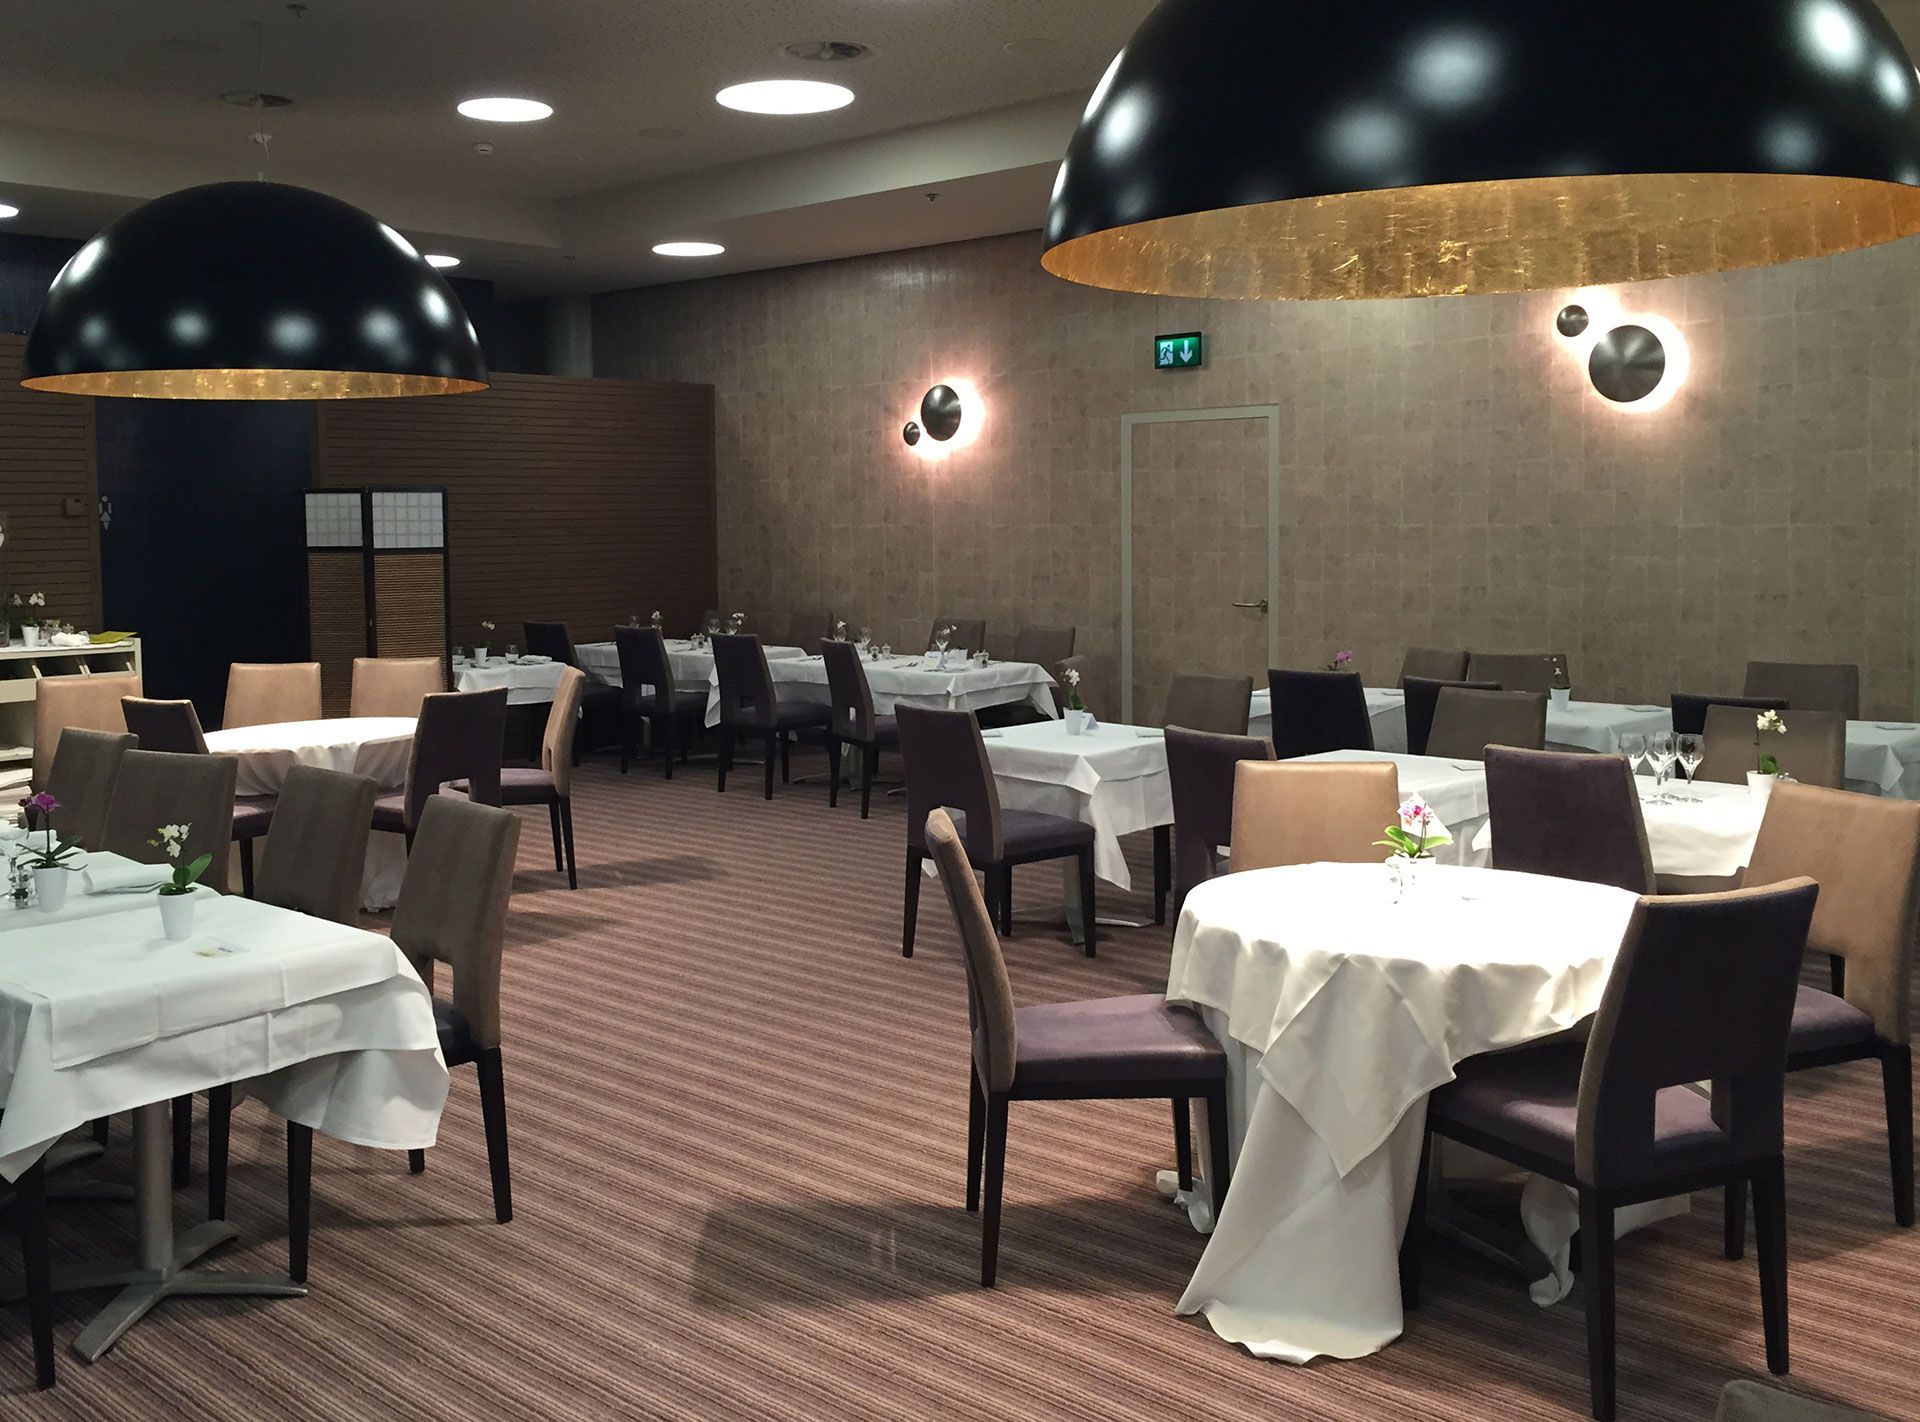 Restaurant Palexpo. Réalisation ID Interior Design, porté par Anne-Laure Ferry-Adam, architecte d'intérieur à Genève.